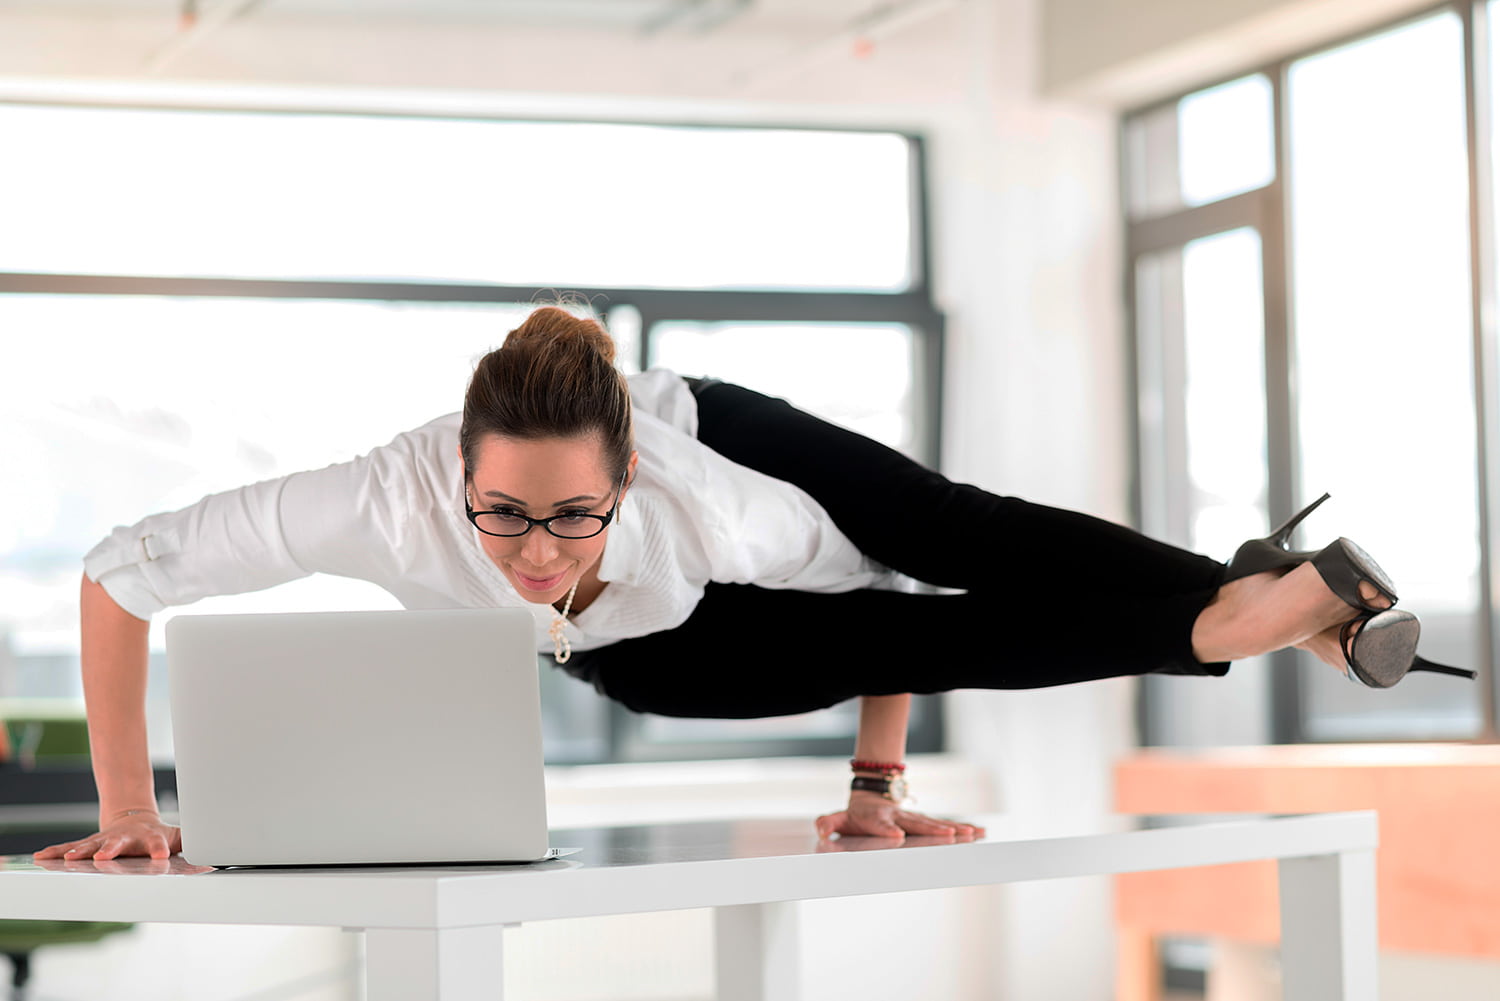 6 lý do Yoga có thể giúp cải thiện năng suất của bạn tại nơi làm việc - giangyoga